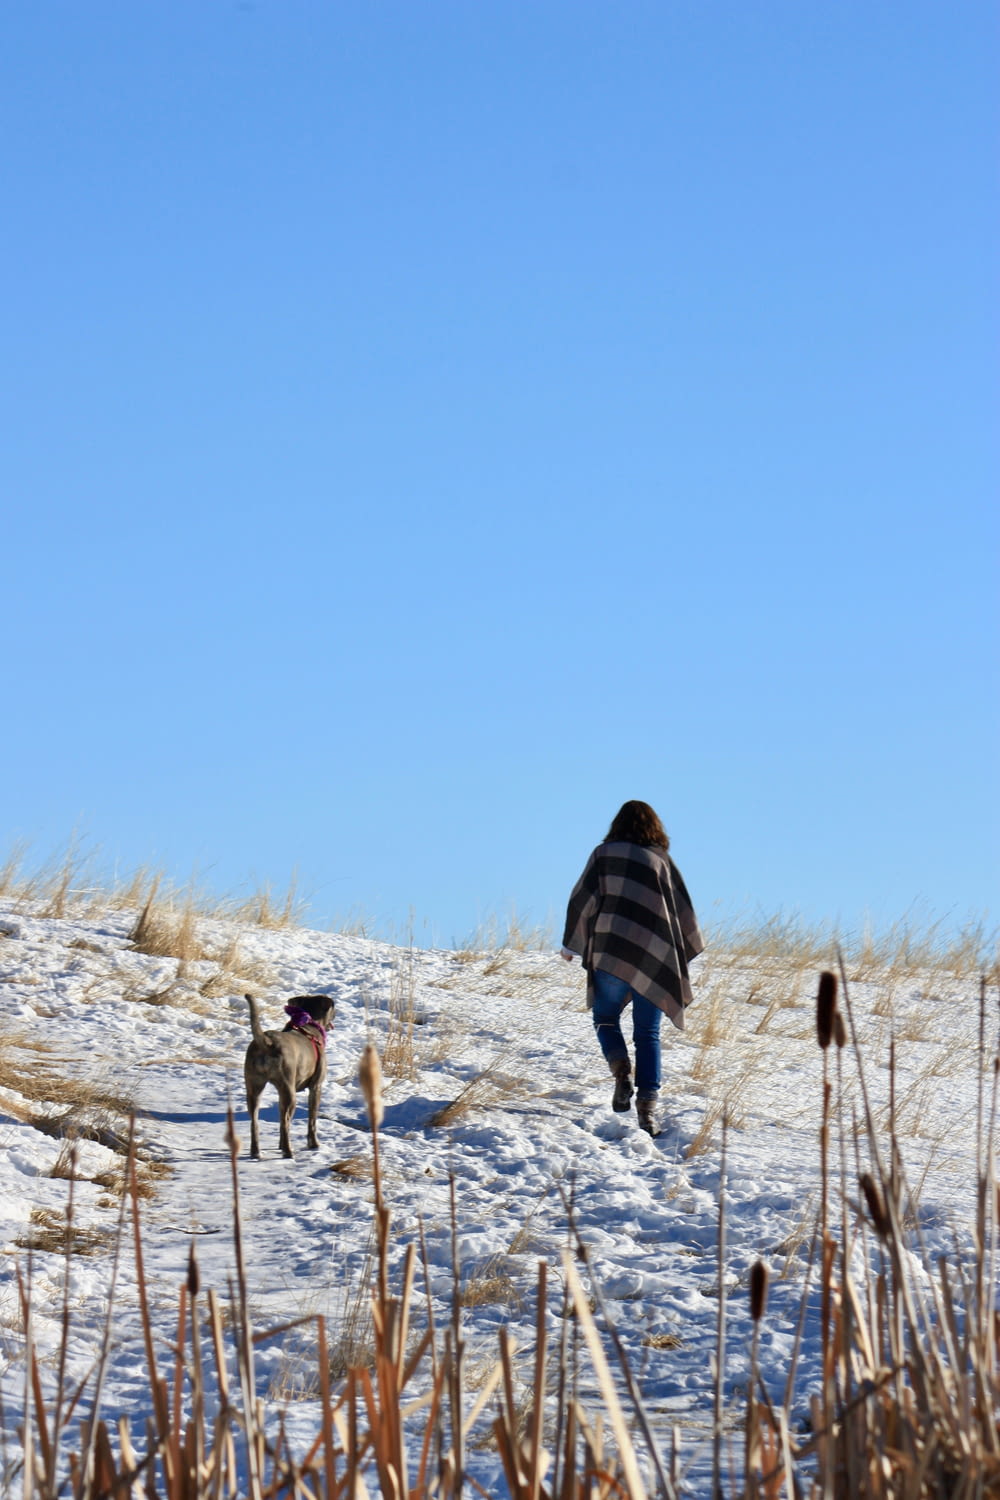 Frau in schwarzer Jacke geht tagsüber auf schneebedecktem Boden spazieren